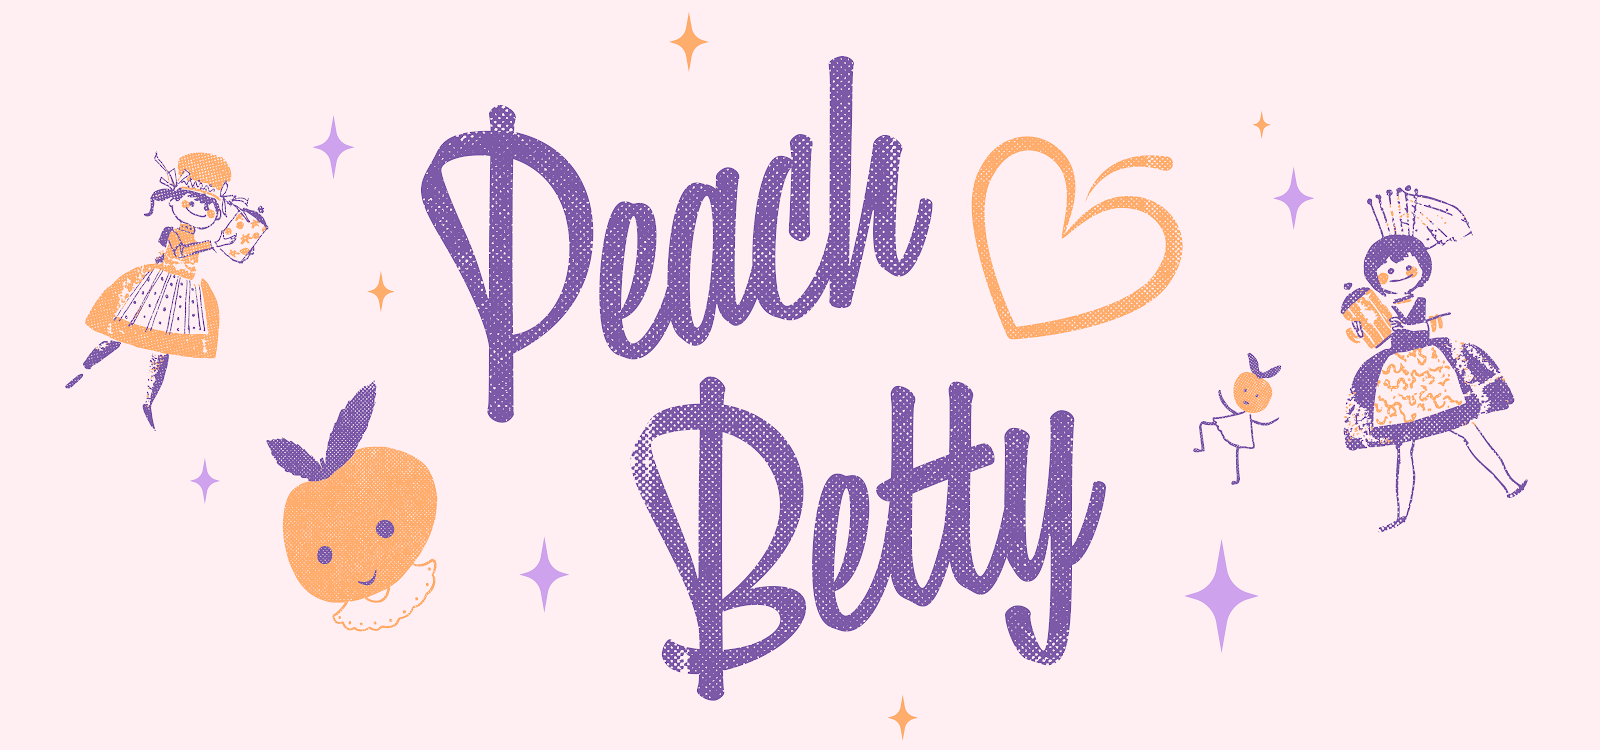 Peach Betty